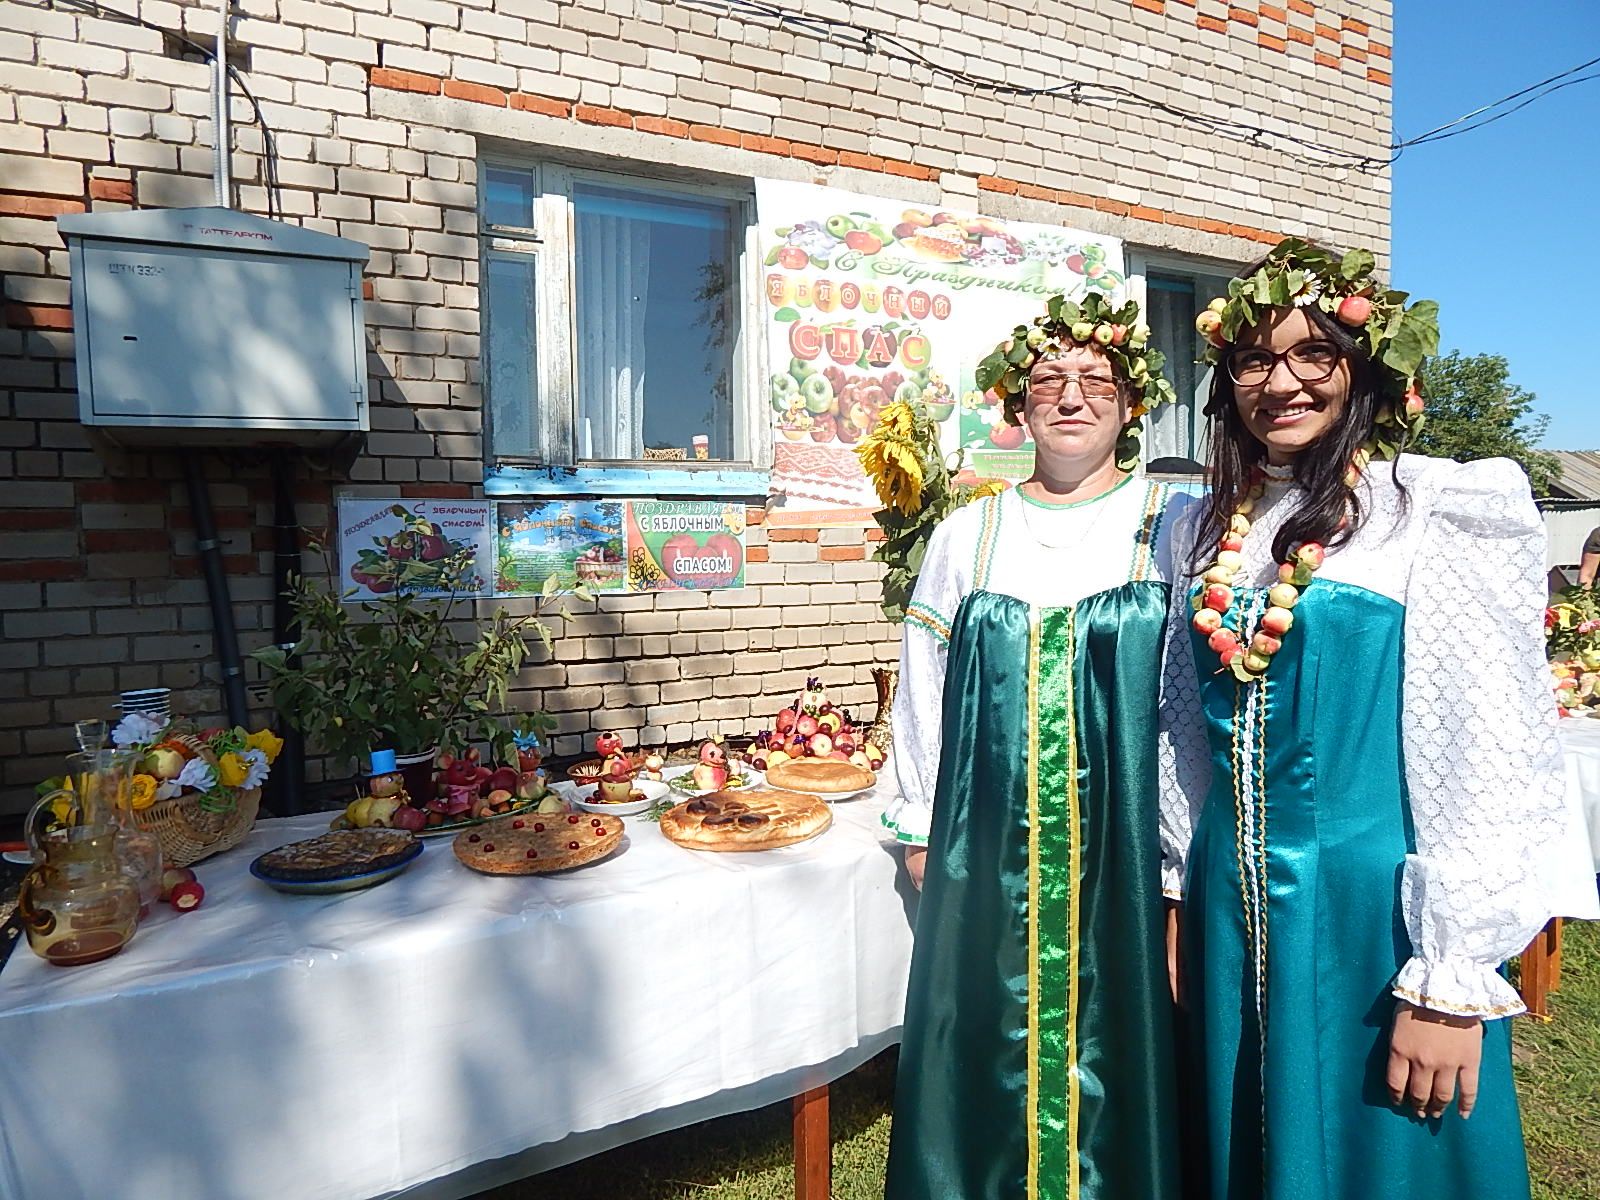 В Караваево состоялся праздник "Яблочный спас"